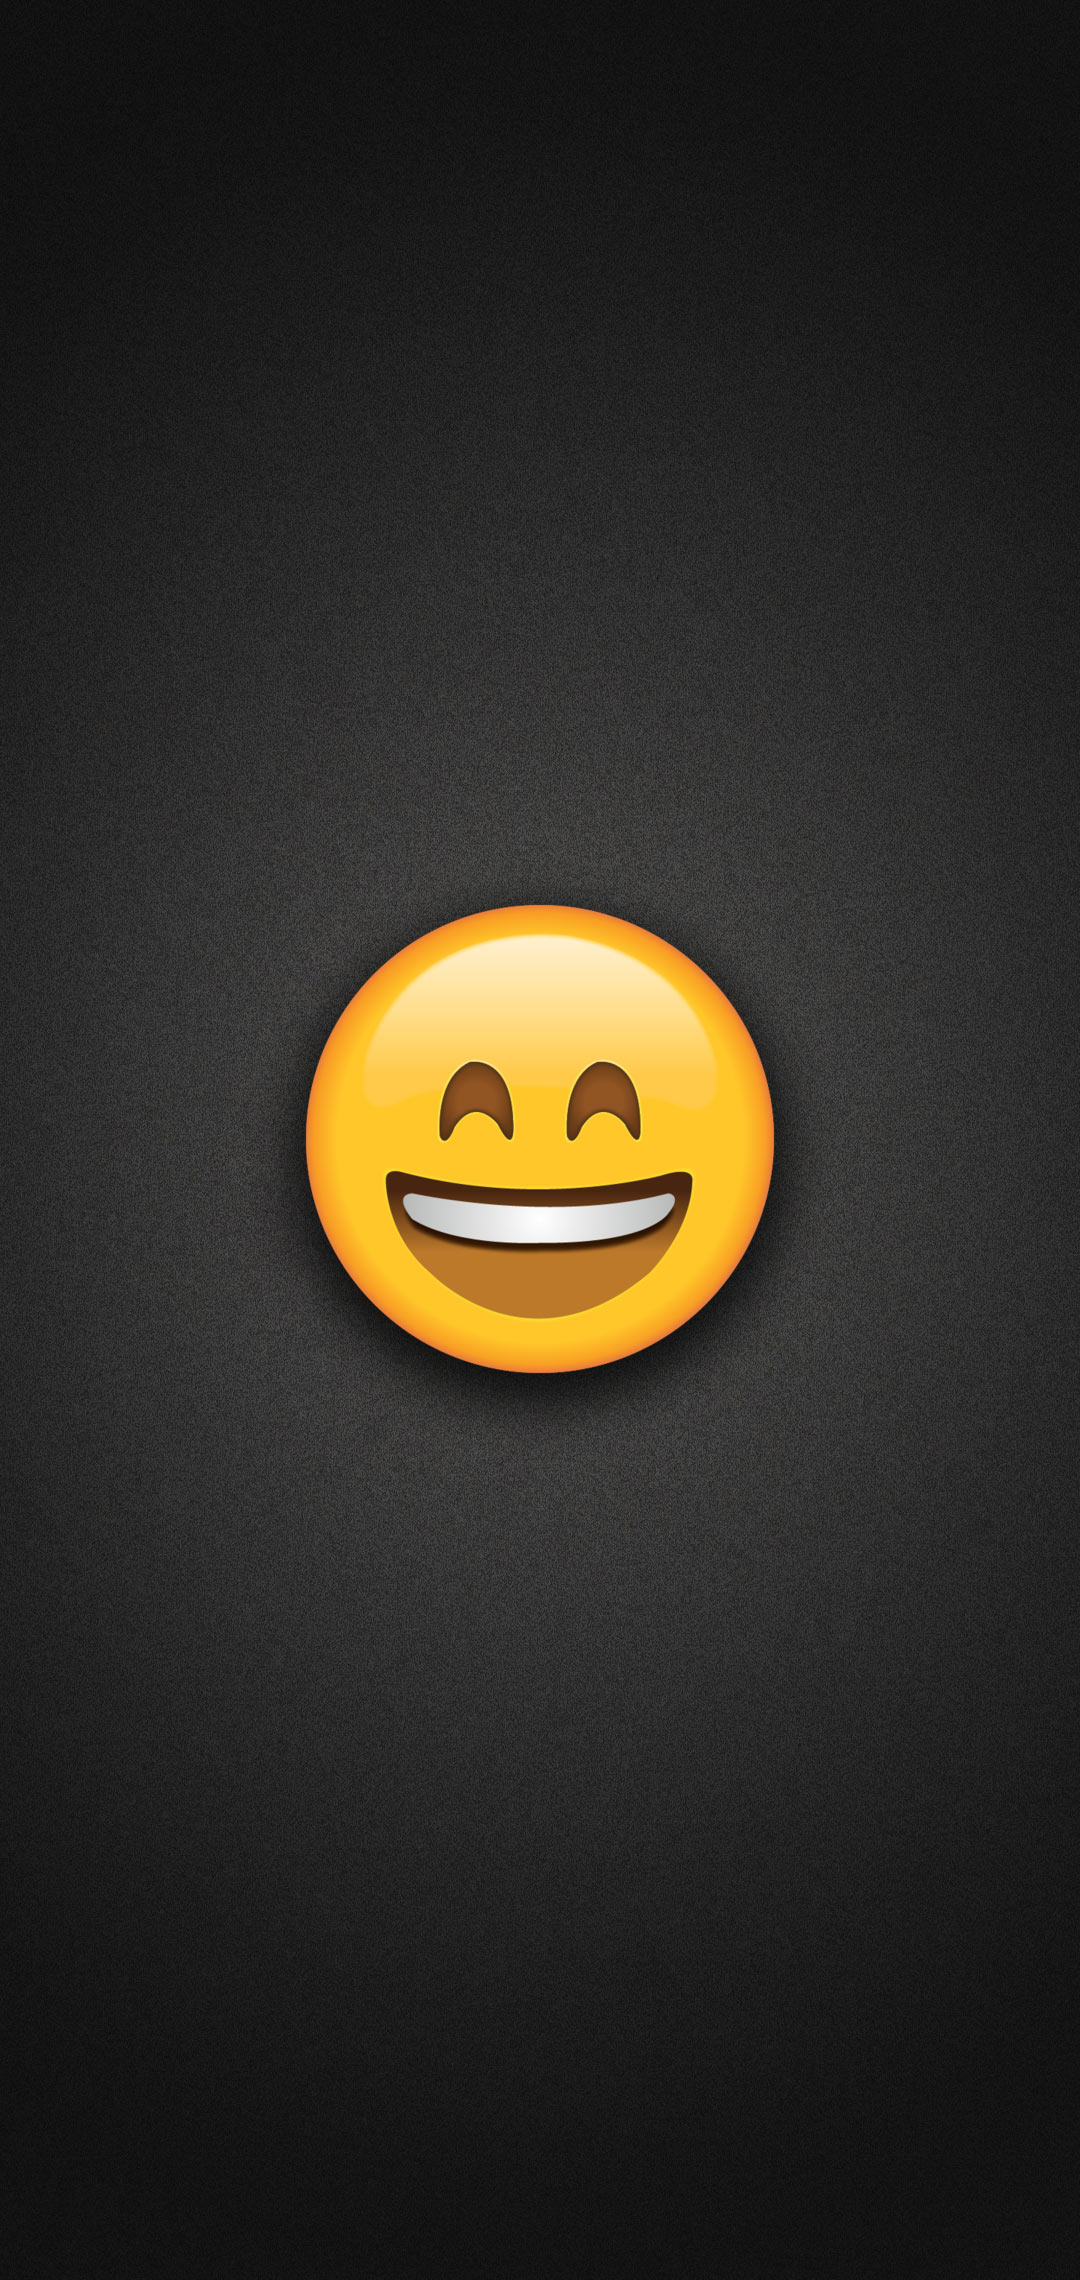 Smiling Emoji With Eyes Phone Wallpaper